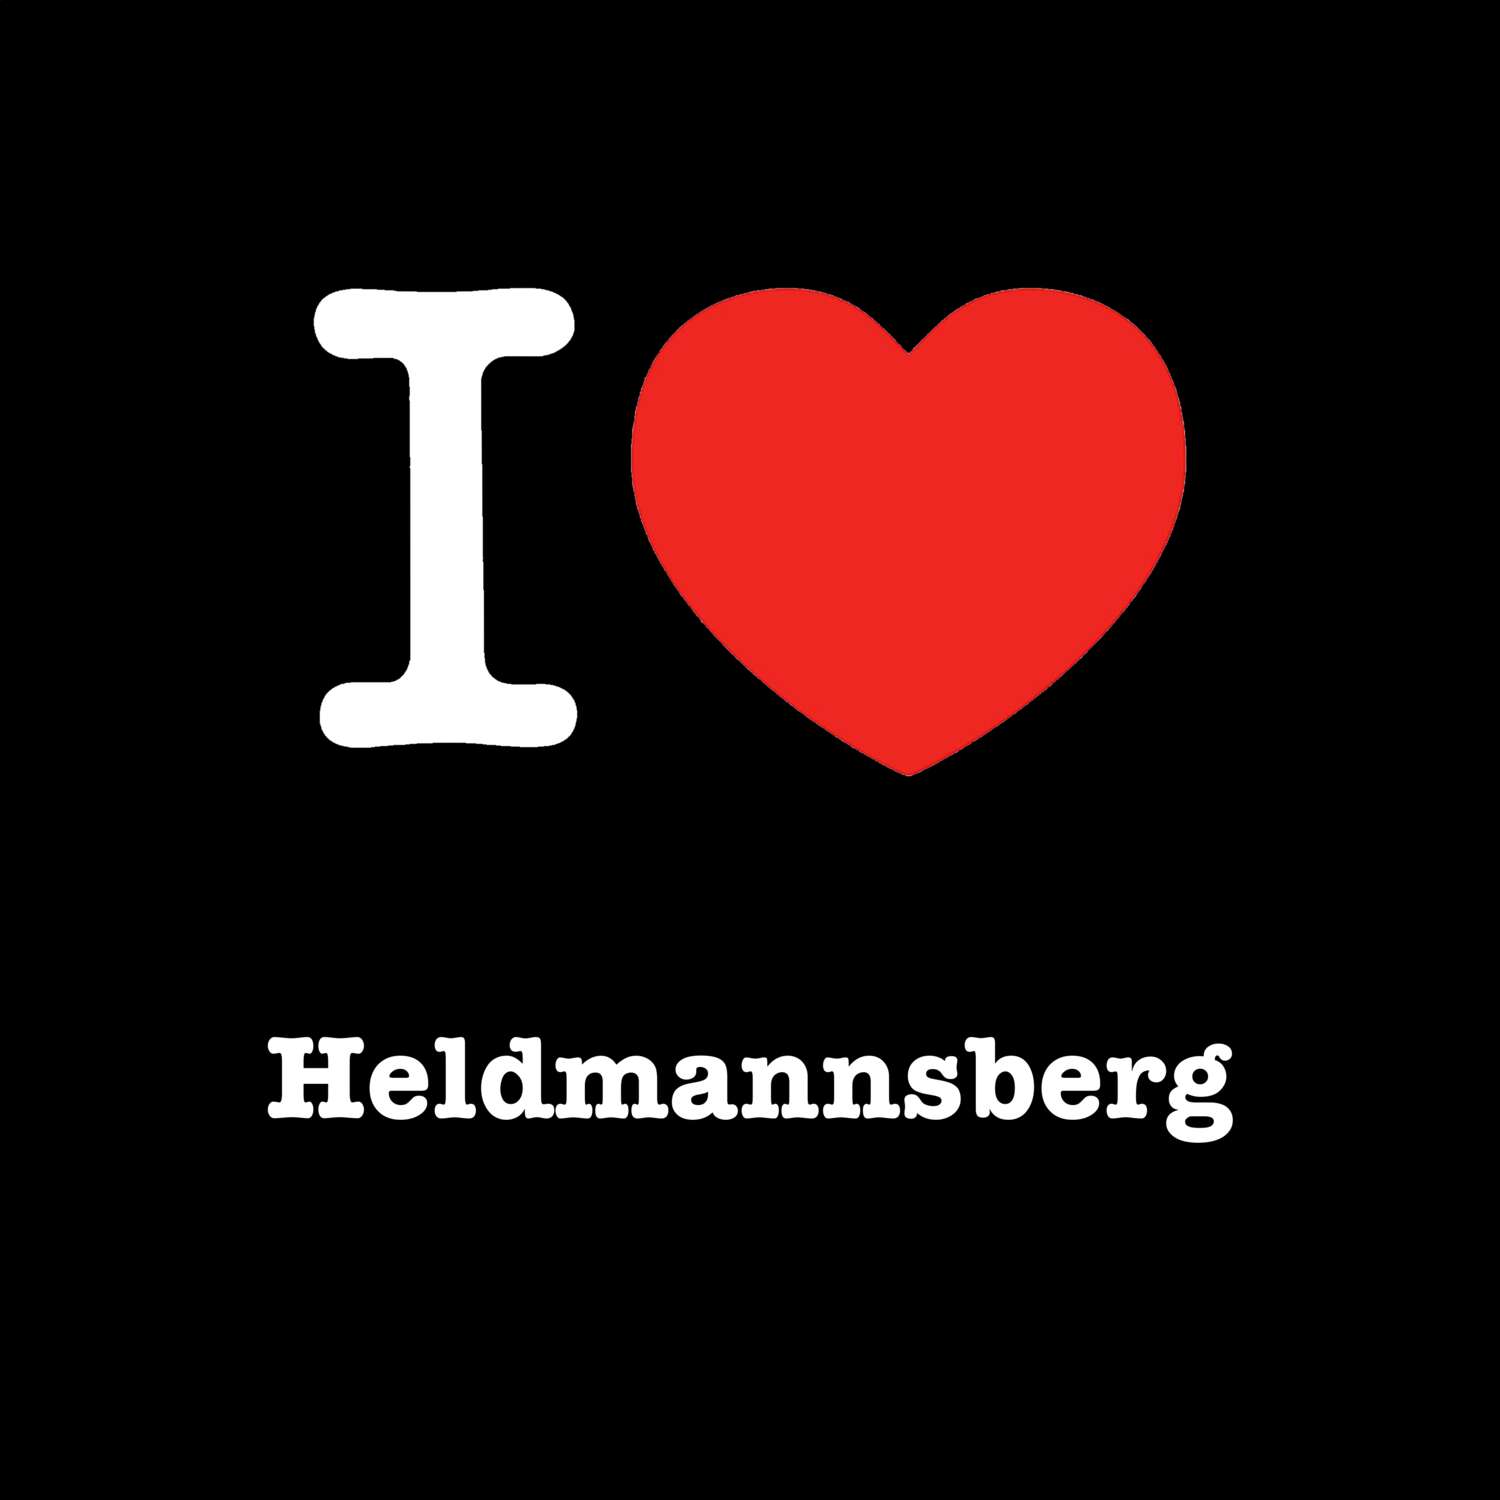 Heldmannsberg T-Shirt »I love«